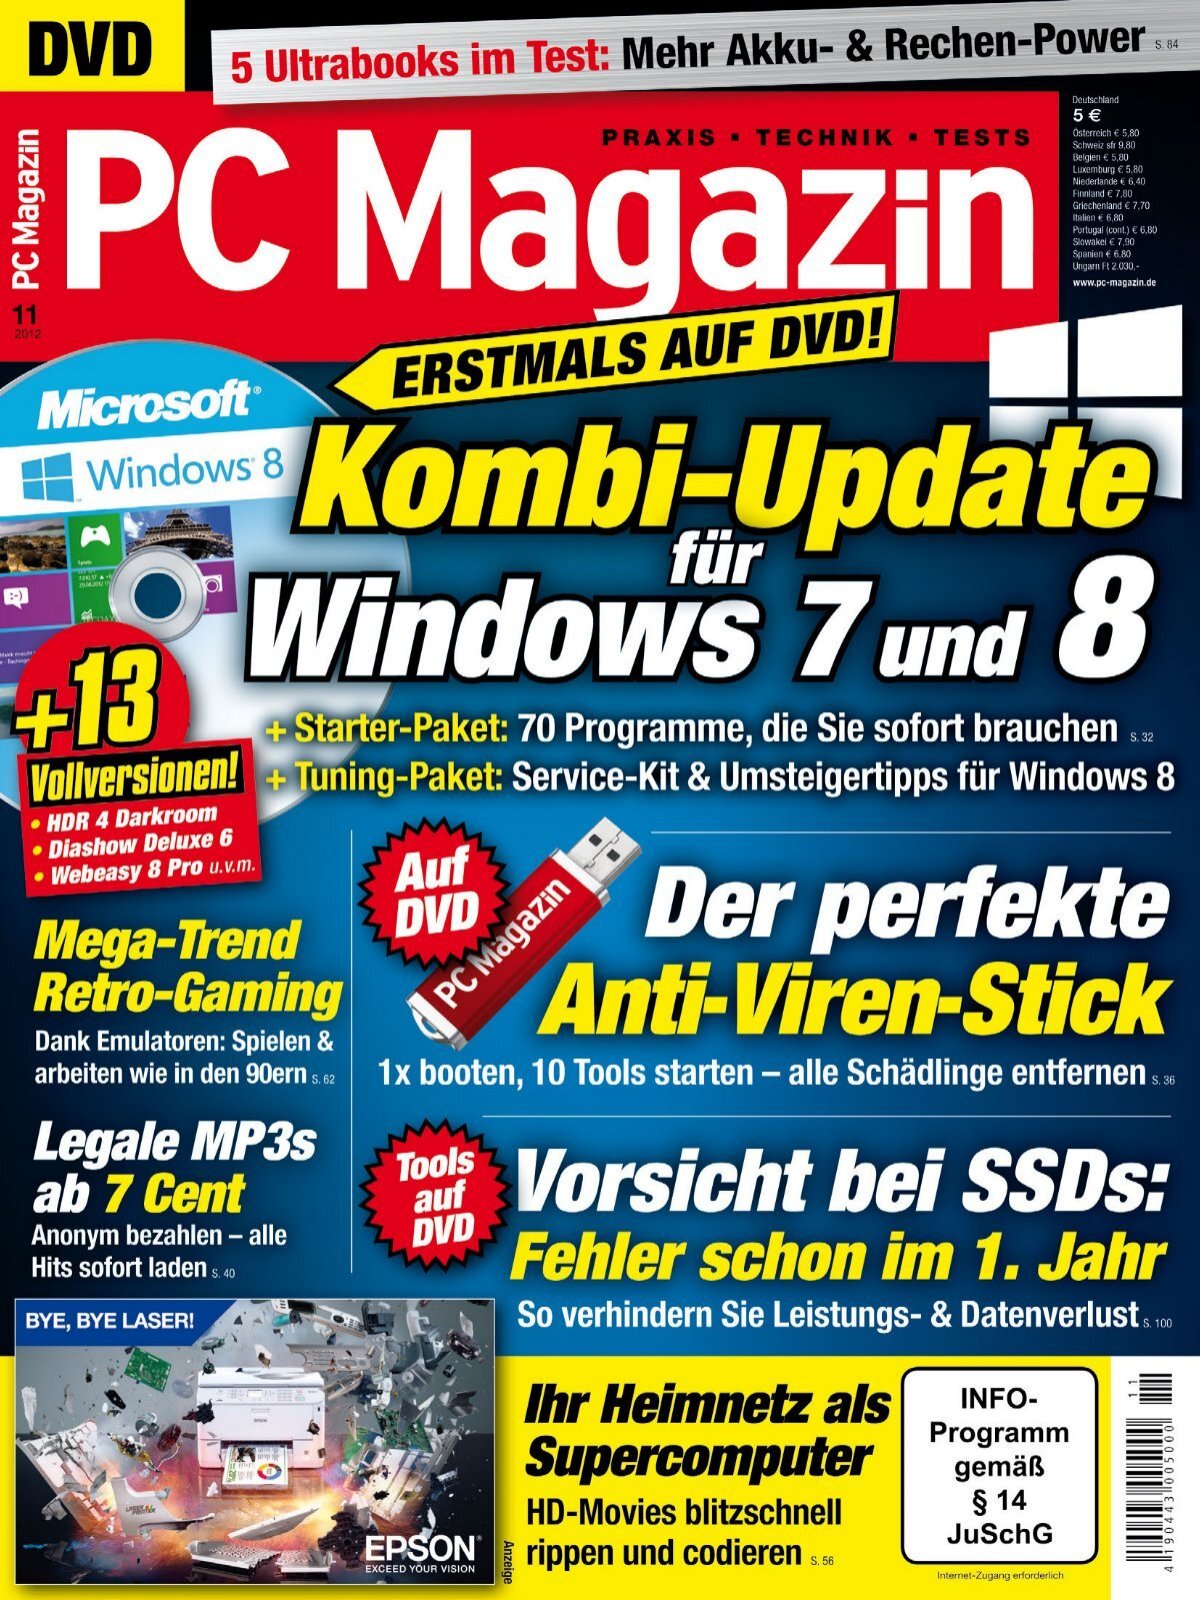 PC Magazin Classic XXL Kombi-Update für Windows 7 und 8 (Vorschau)